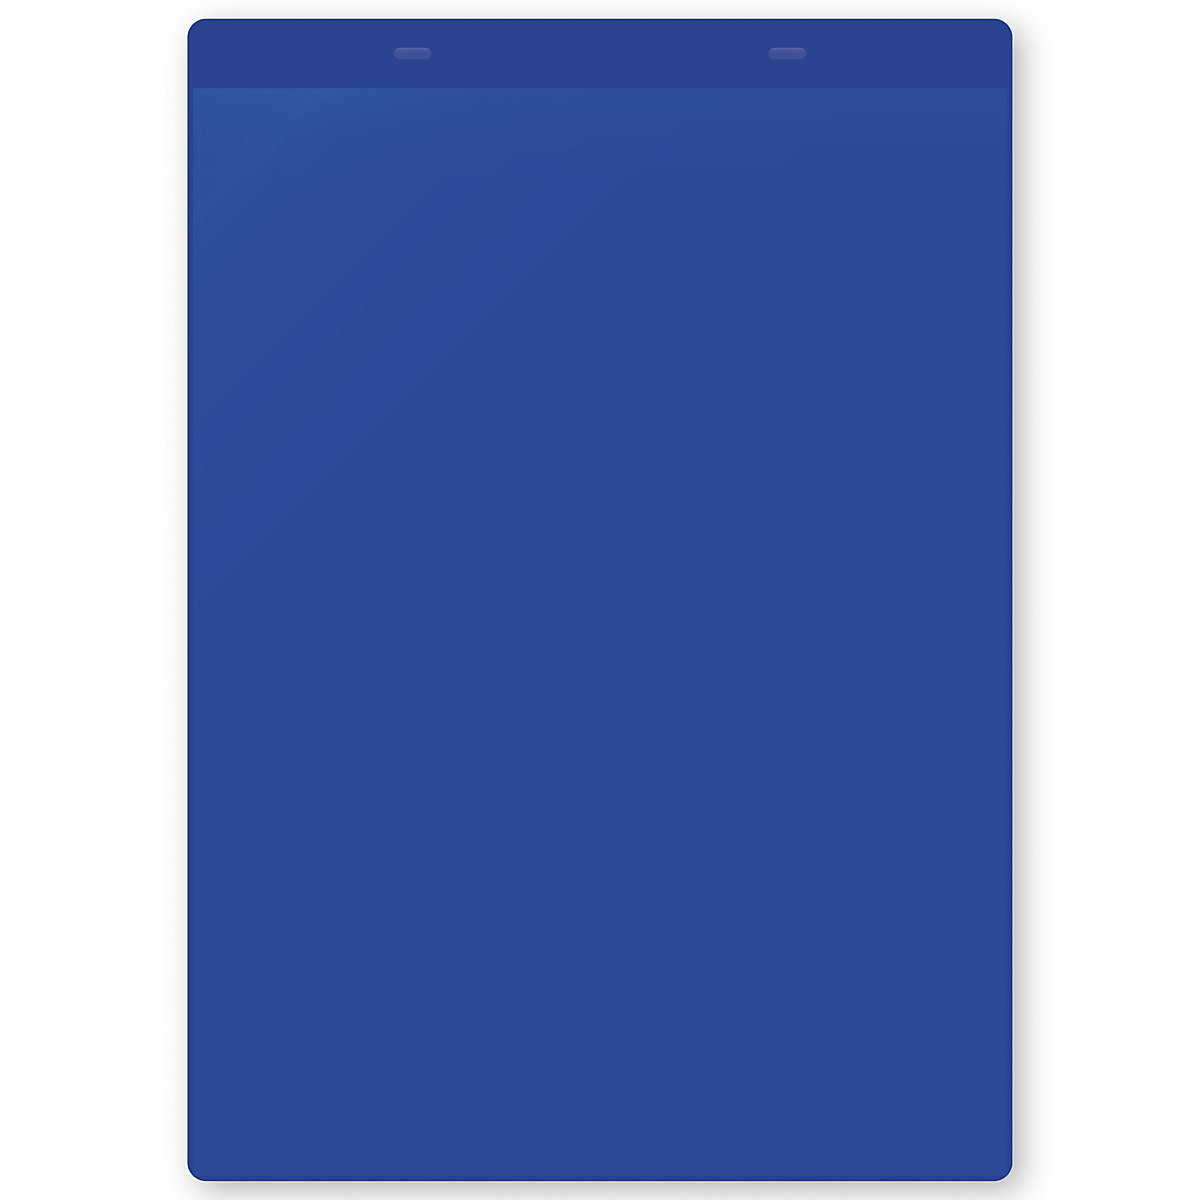 Öntapadó dokumentumtartó tasakok, DIN A4, álló, cs. e. 10 db, kék